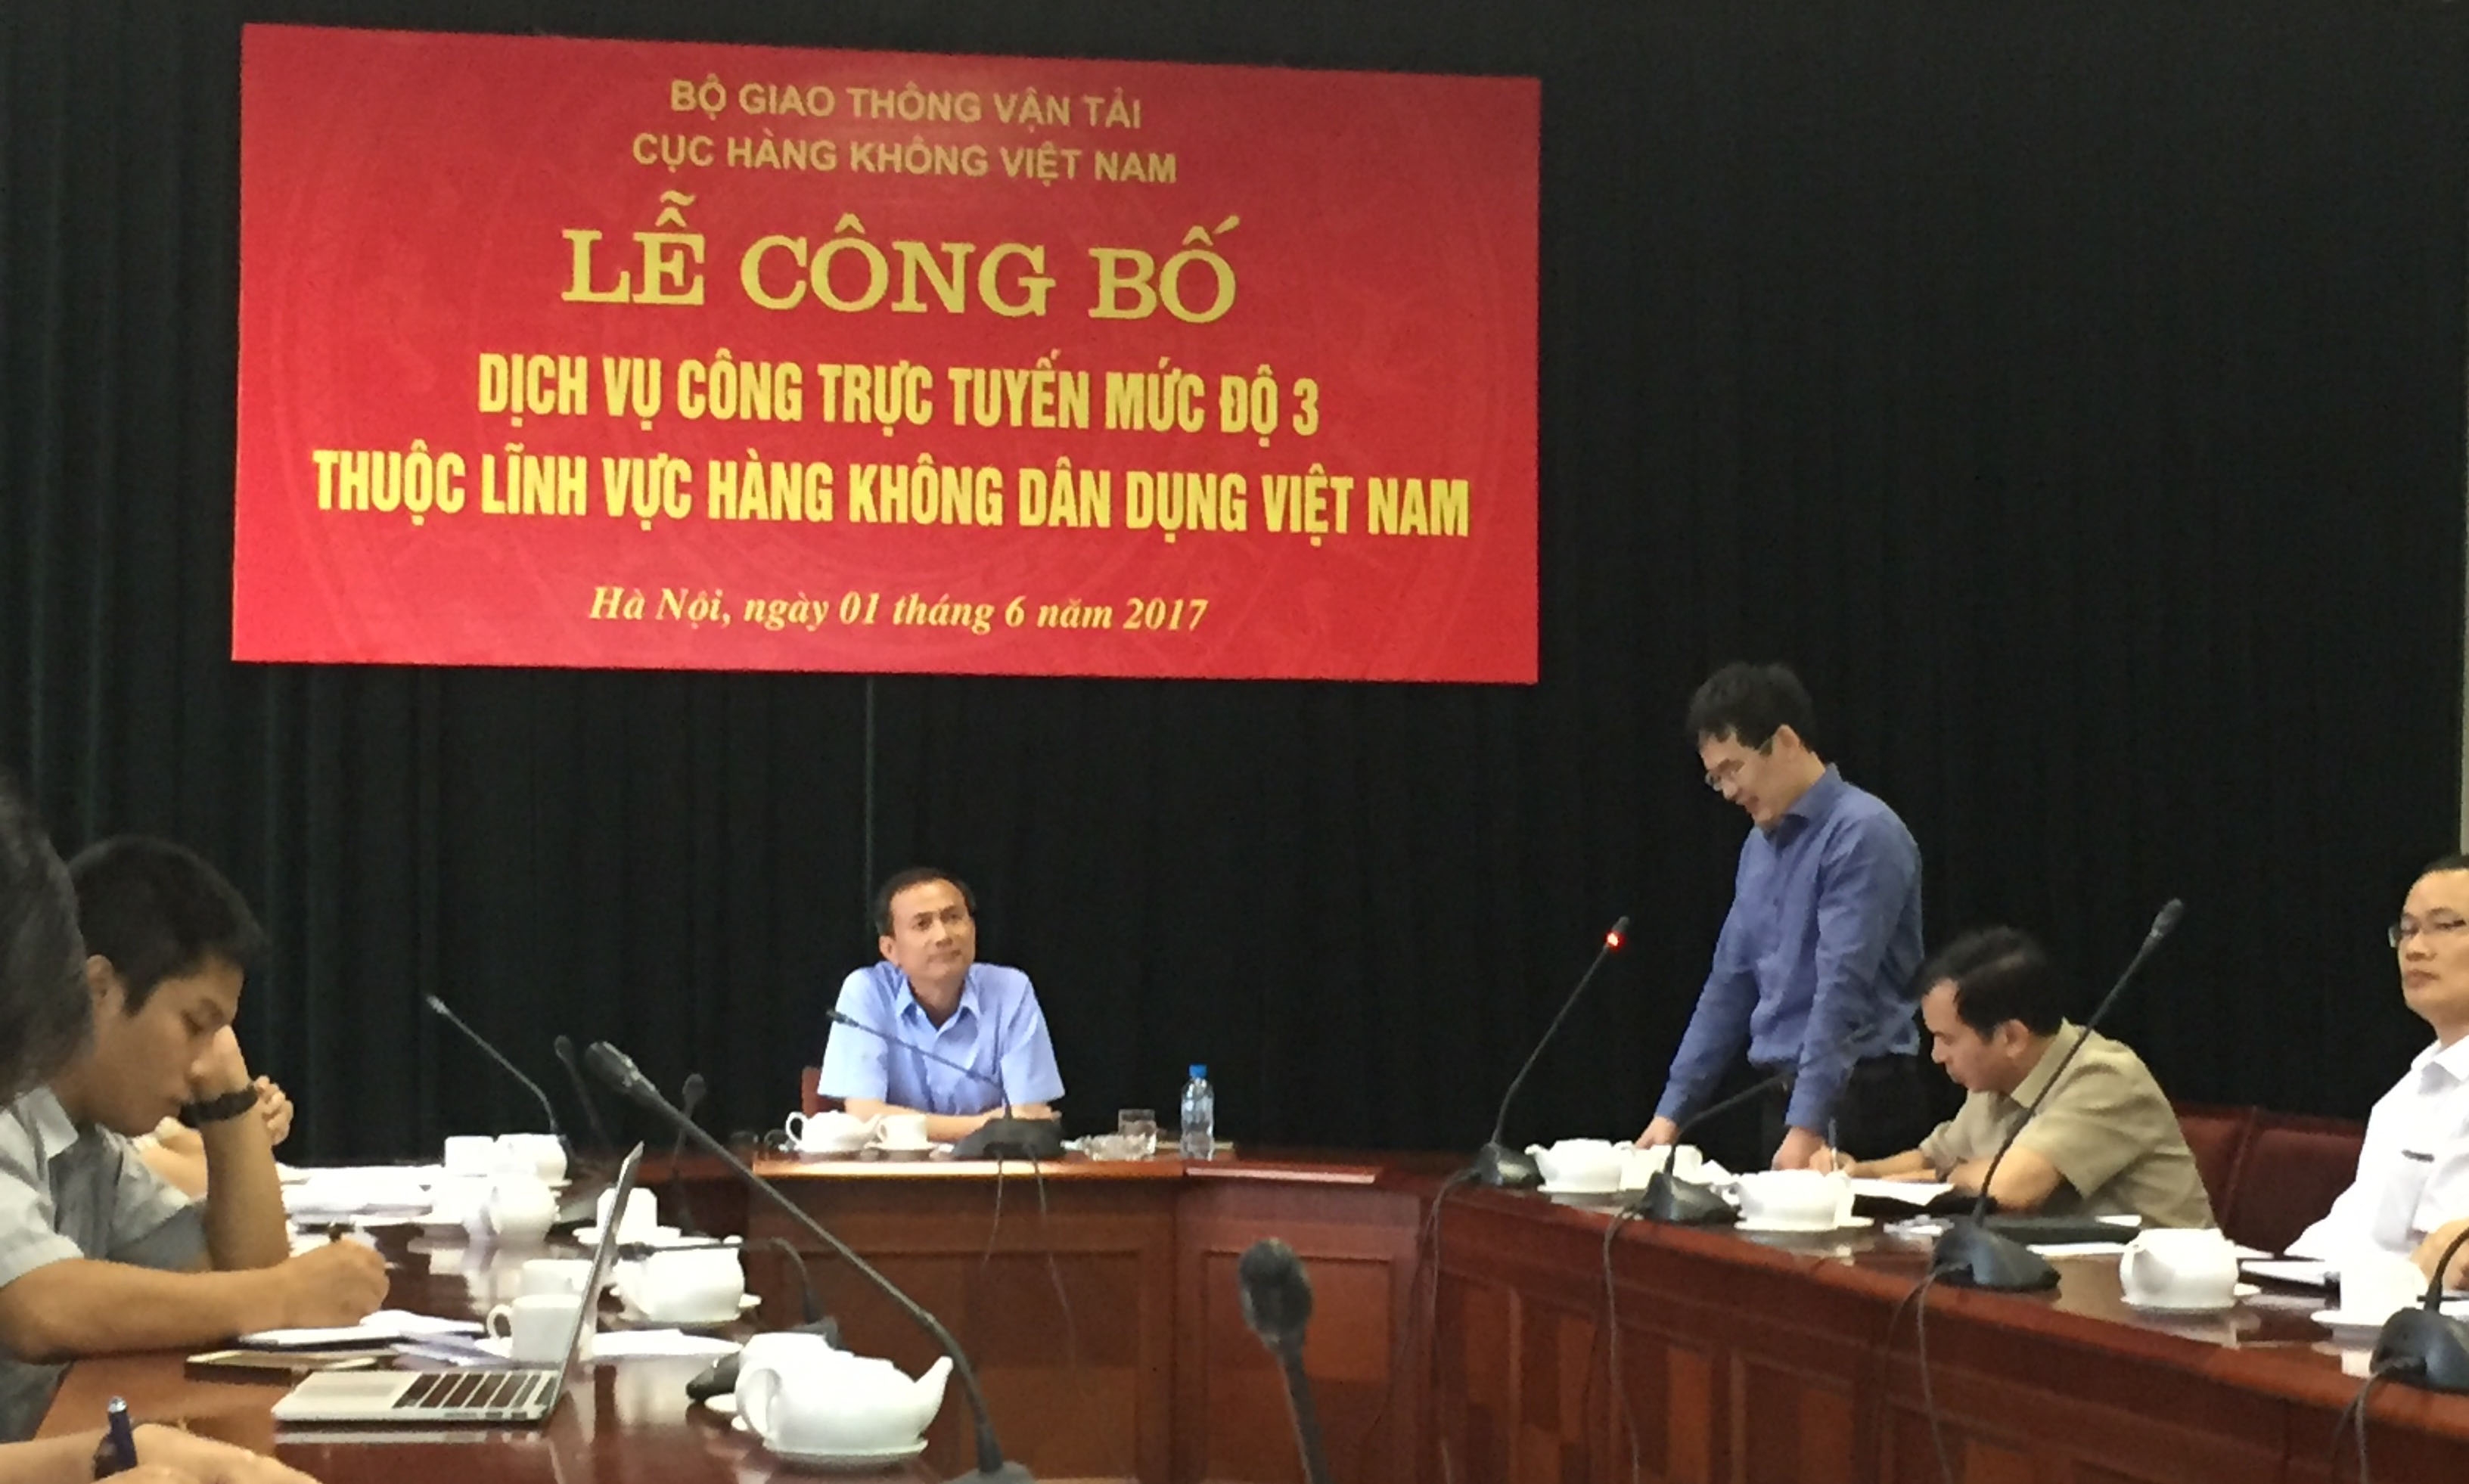 Công bố dịch vụ công trực tuyến mức độ III thuộc lĩnh vực Hàng không dân dụng Việt Nam